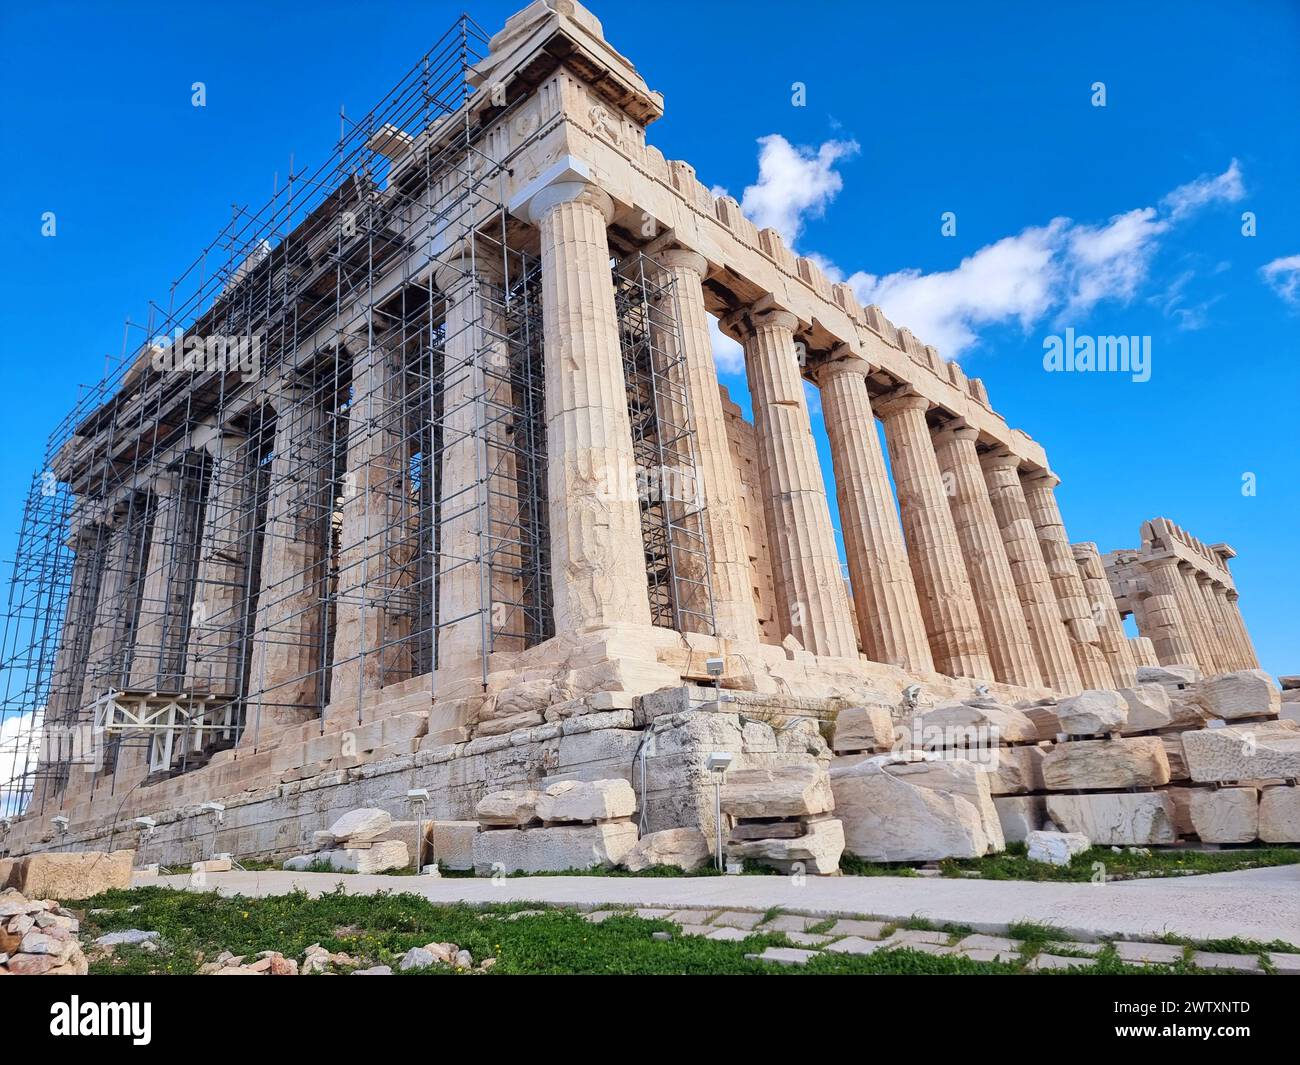 Il Partenone. Completato a metà del V secolo a.C., il Partenone è il fulcro dell'Acropoli ed è spesso considerato il capolavoro dell'ordine dorico dell'architettura. Il suo nome si riferisce ad Atena Parthenos, o "Atena la Vergine". Grecia. Foto Stock